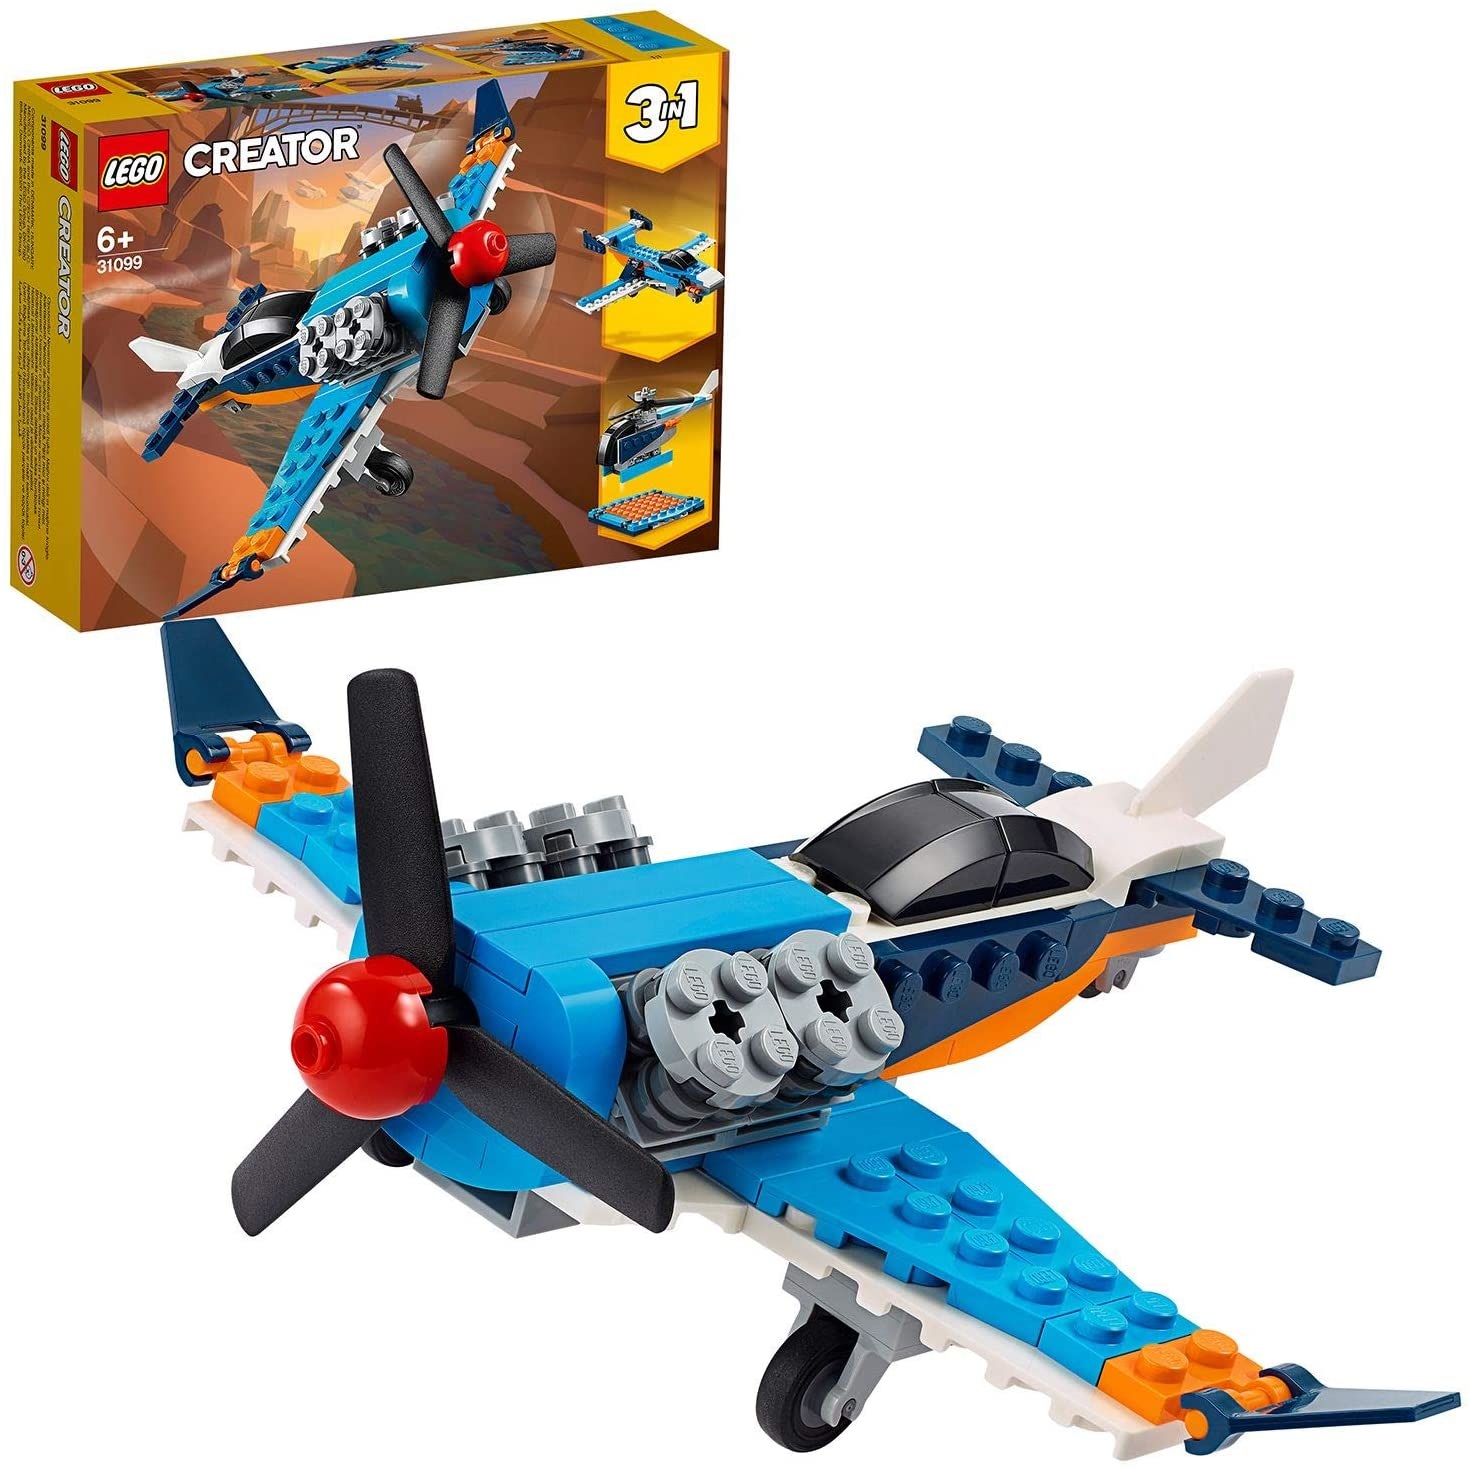 Avion cu elice Lego Creator, +6 ani, 31099, Lego